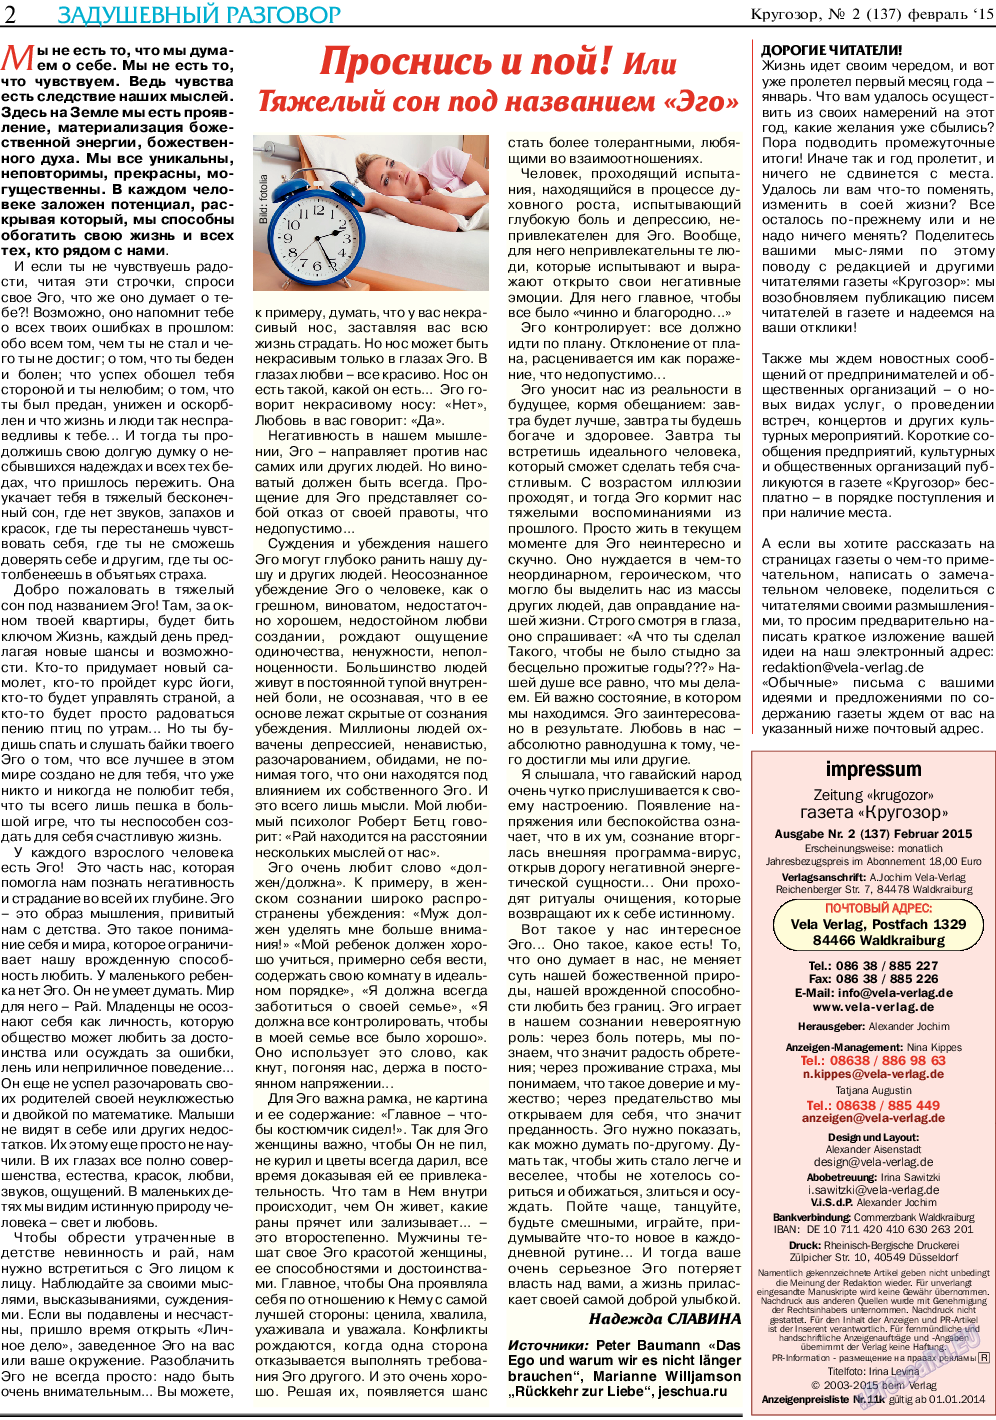 Кругозор (газета). 2015 год, номер 2, стр. 2